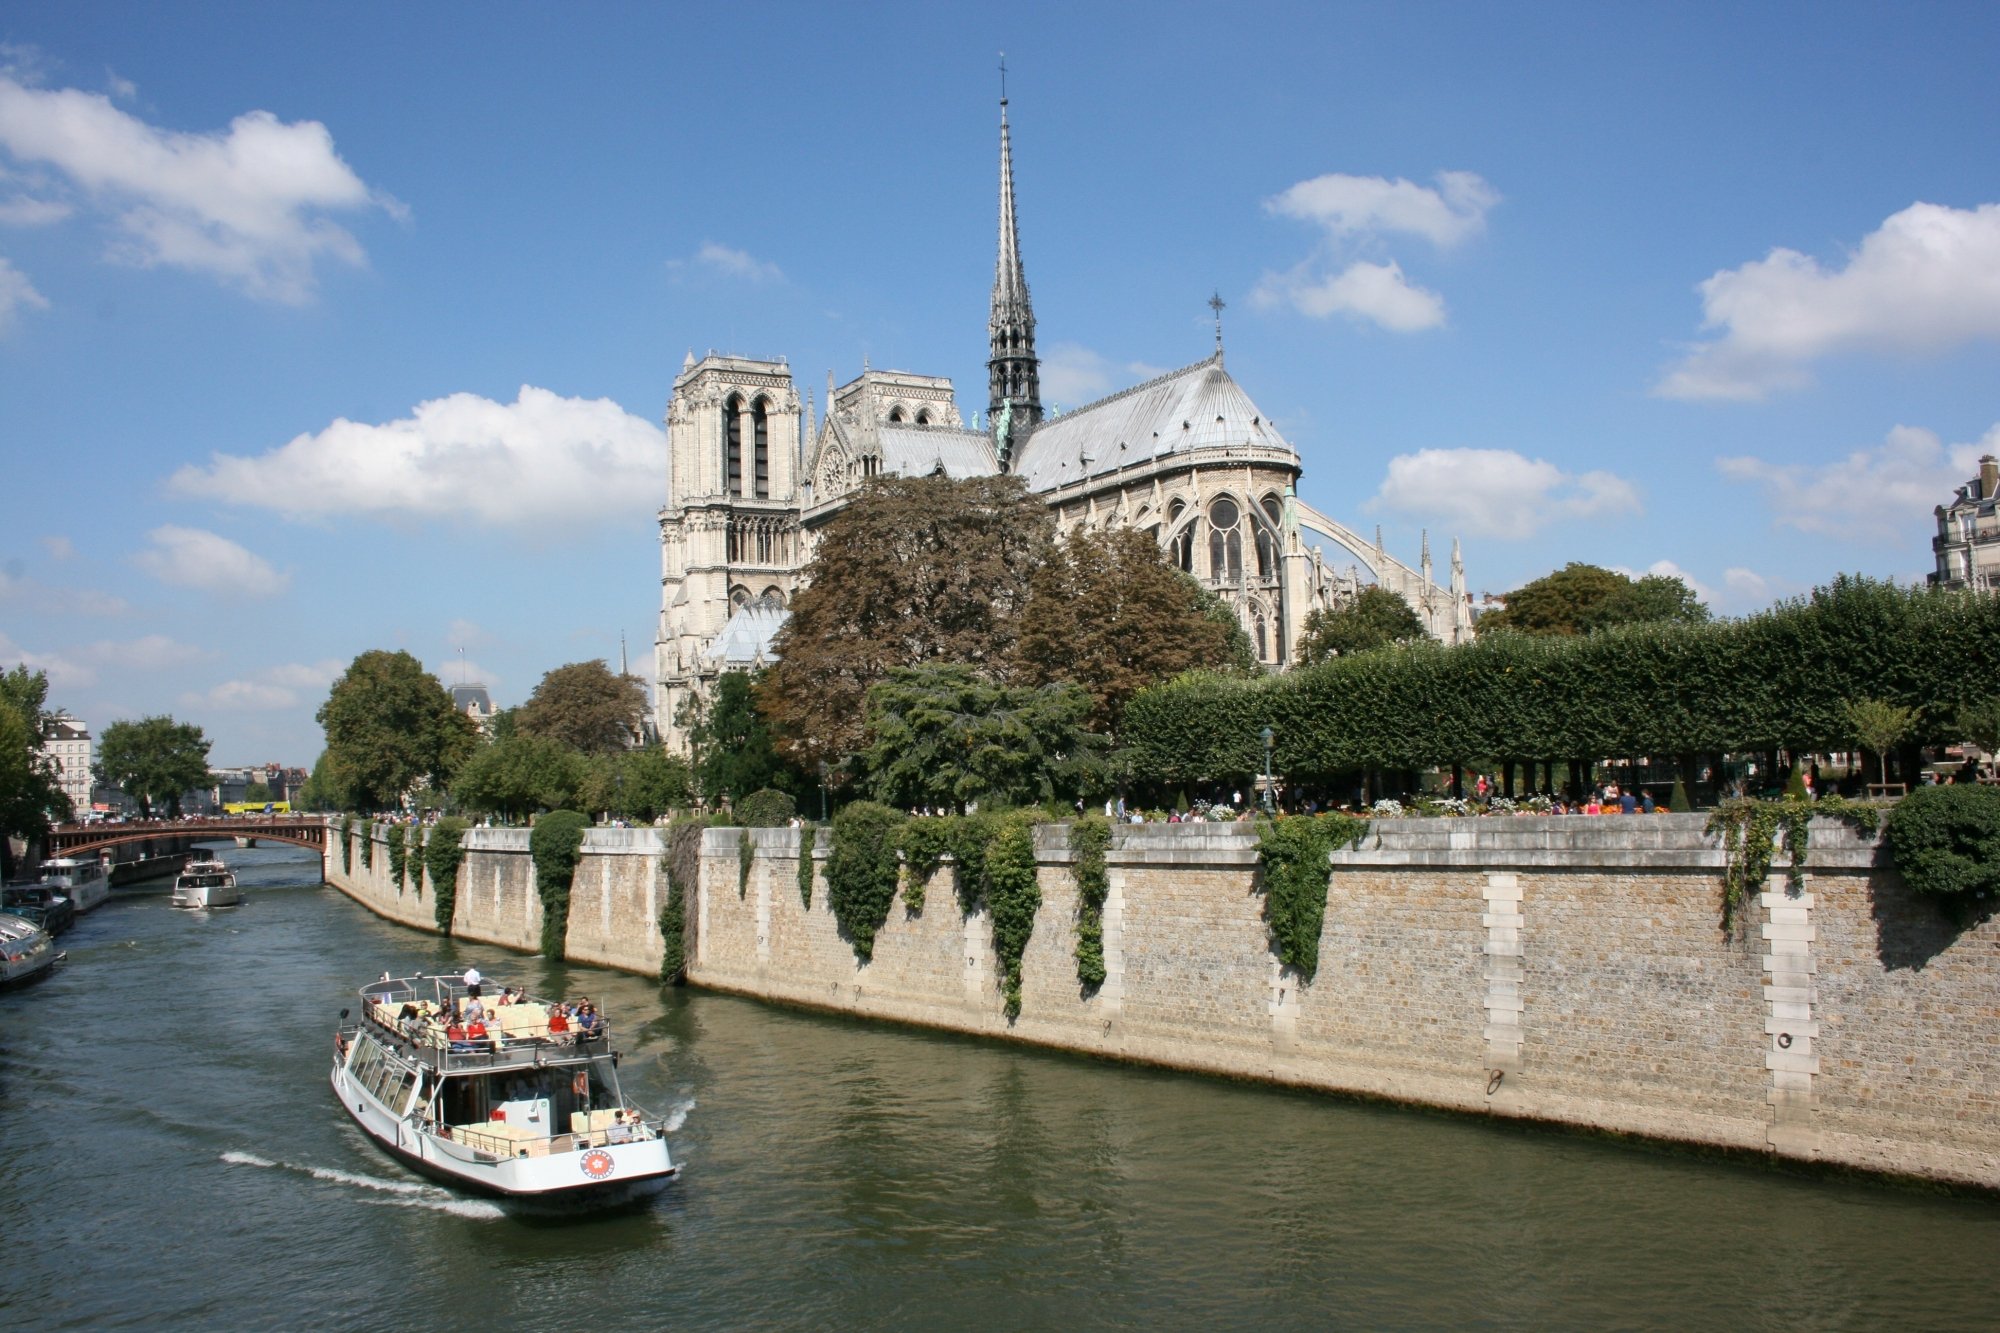 521/Photos_Paris/boat-chateau-palace-paris-river-canal-929085-pxhere_com.jpg